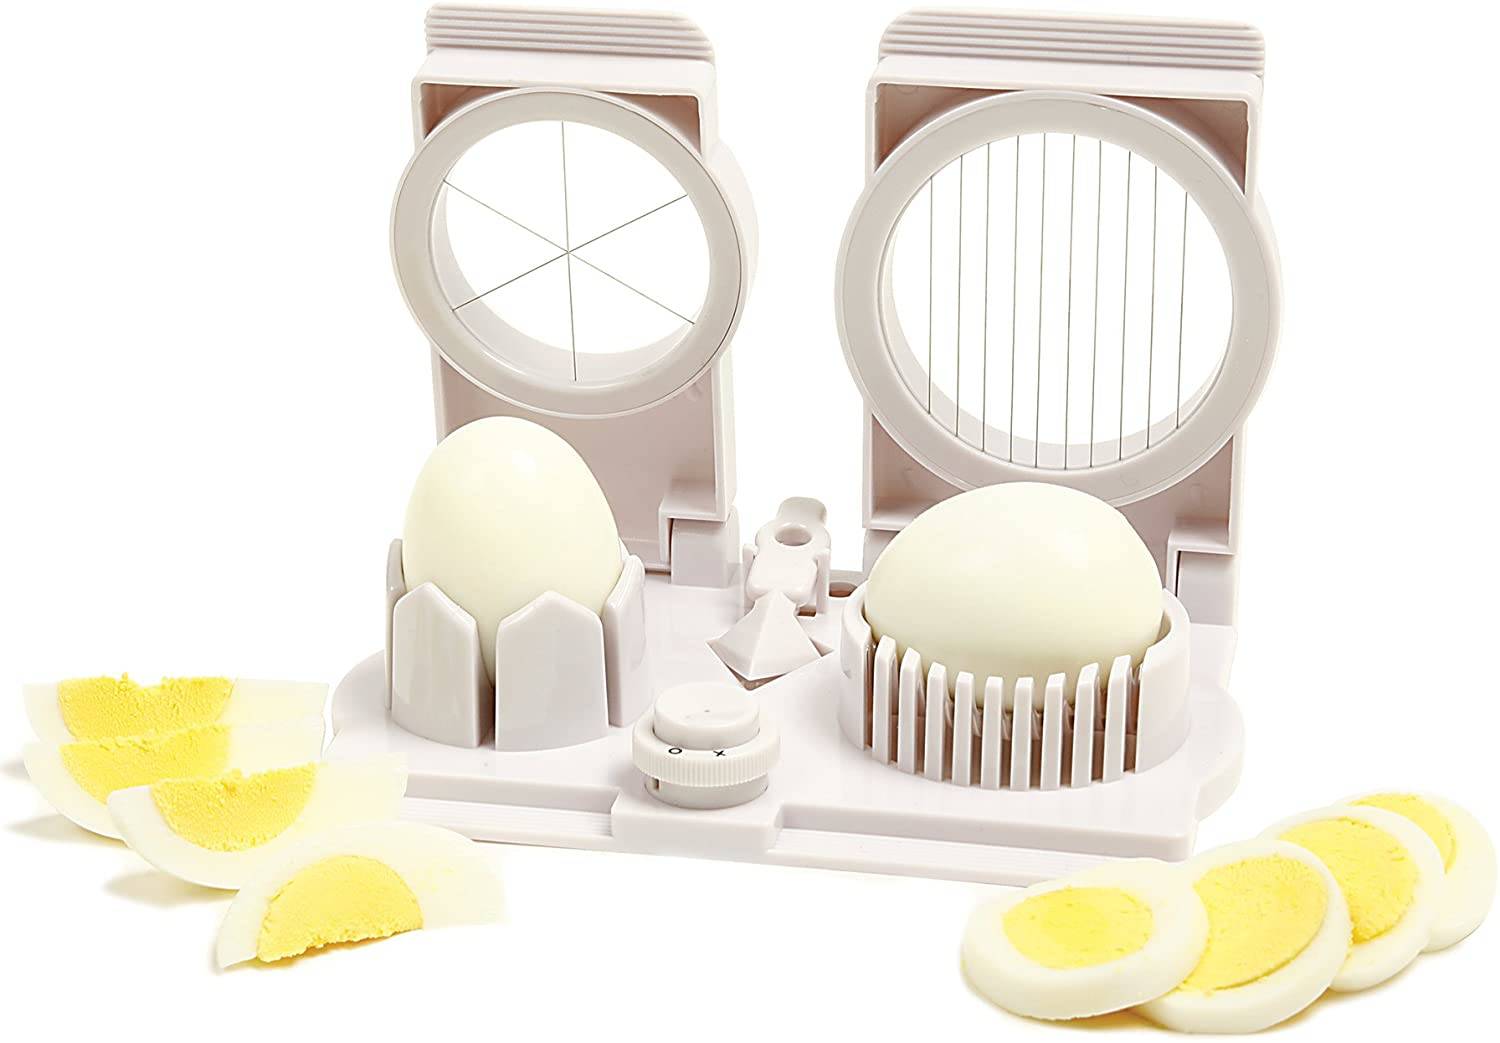 Egg Slicer, Egg Slicer for Hard Boiled Eggs, Aluminium Egg Slicer with Stainless Steel Wire, Heavy Duty Egg Cutter Dishwasher Safe(Yellow, Size: 10